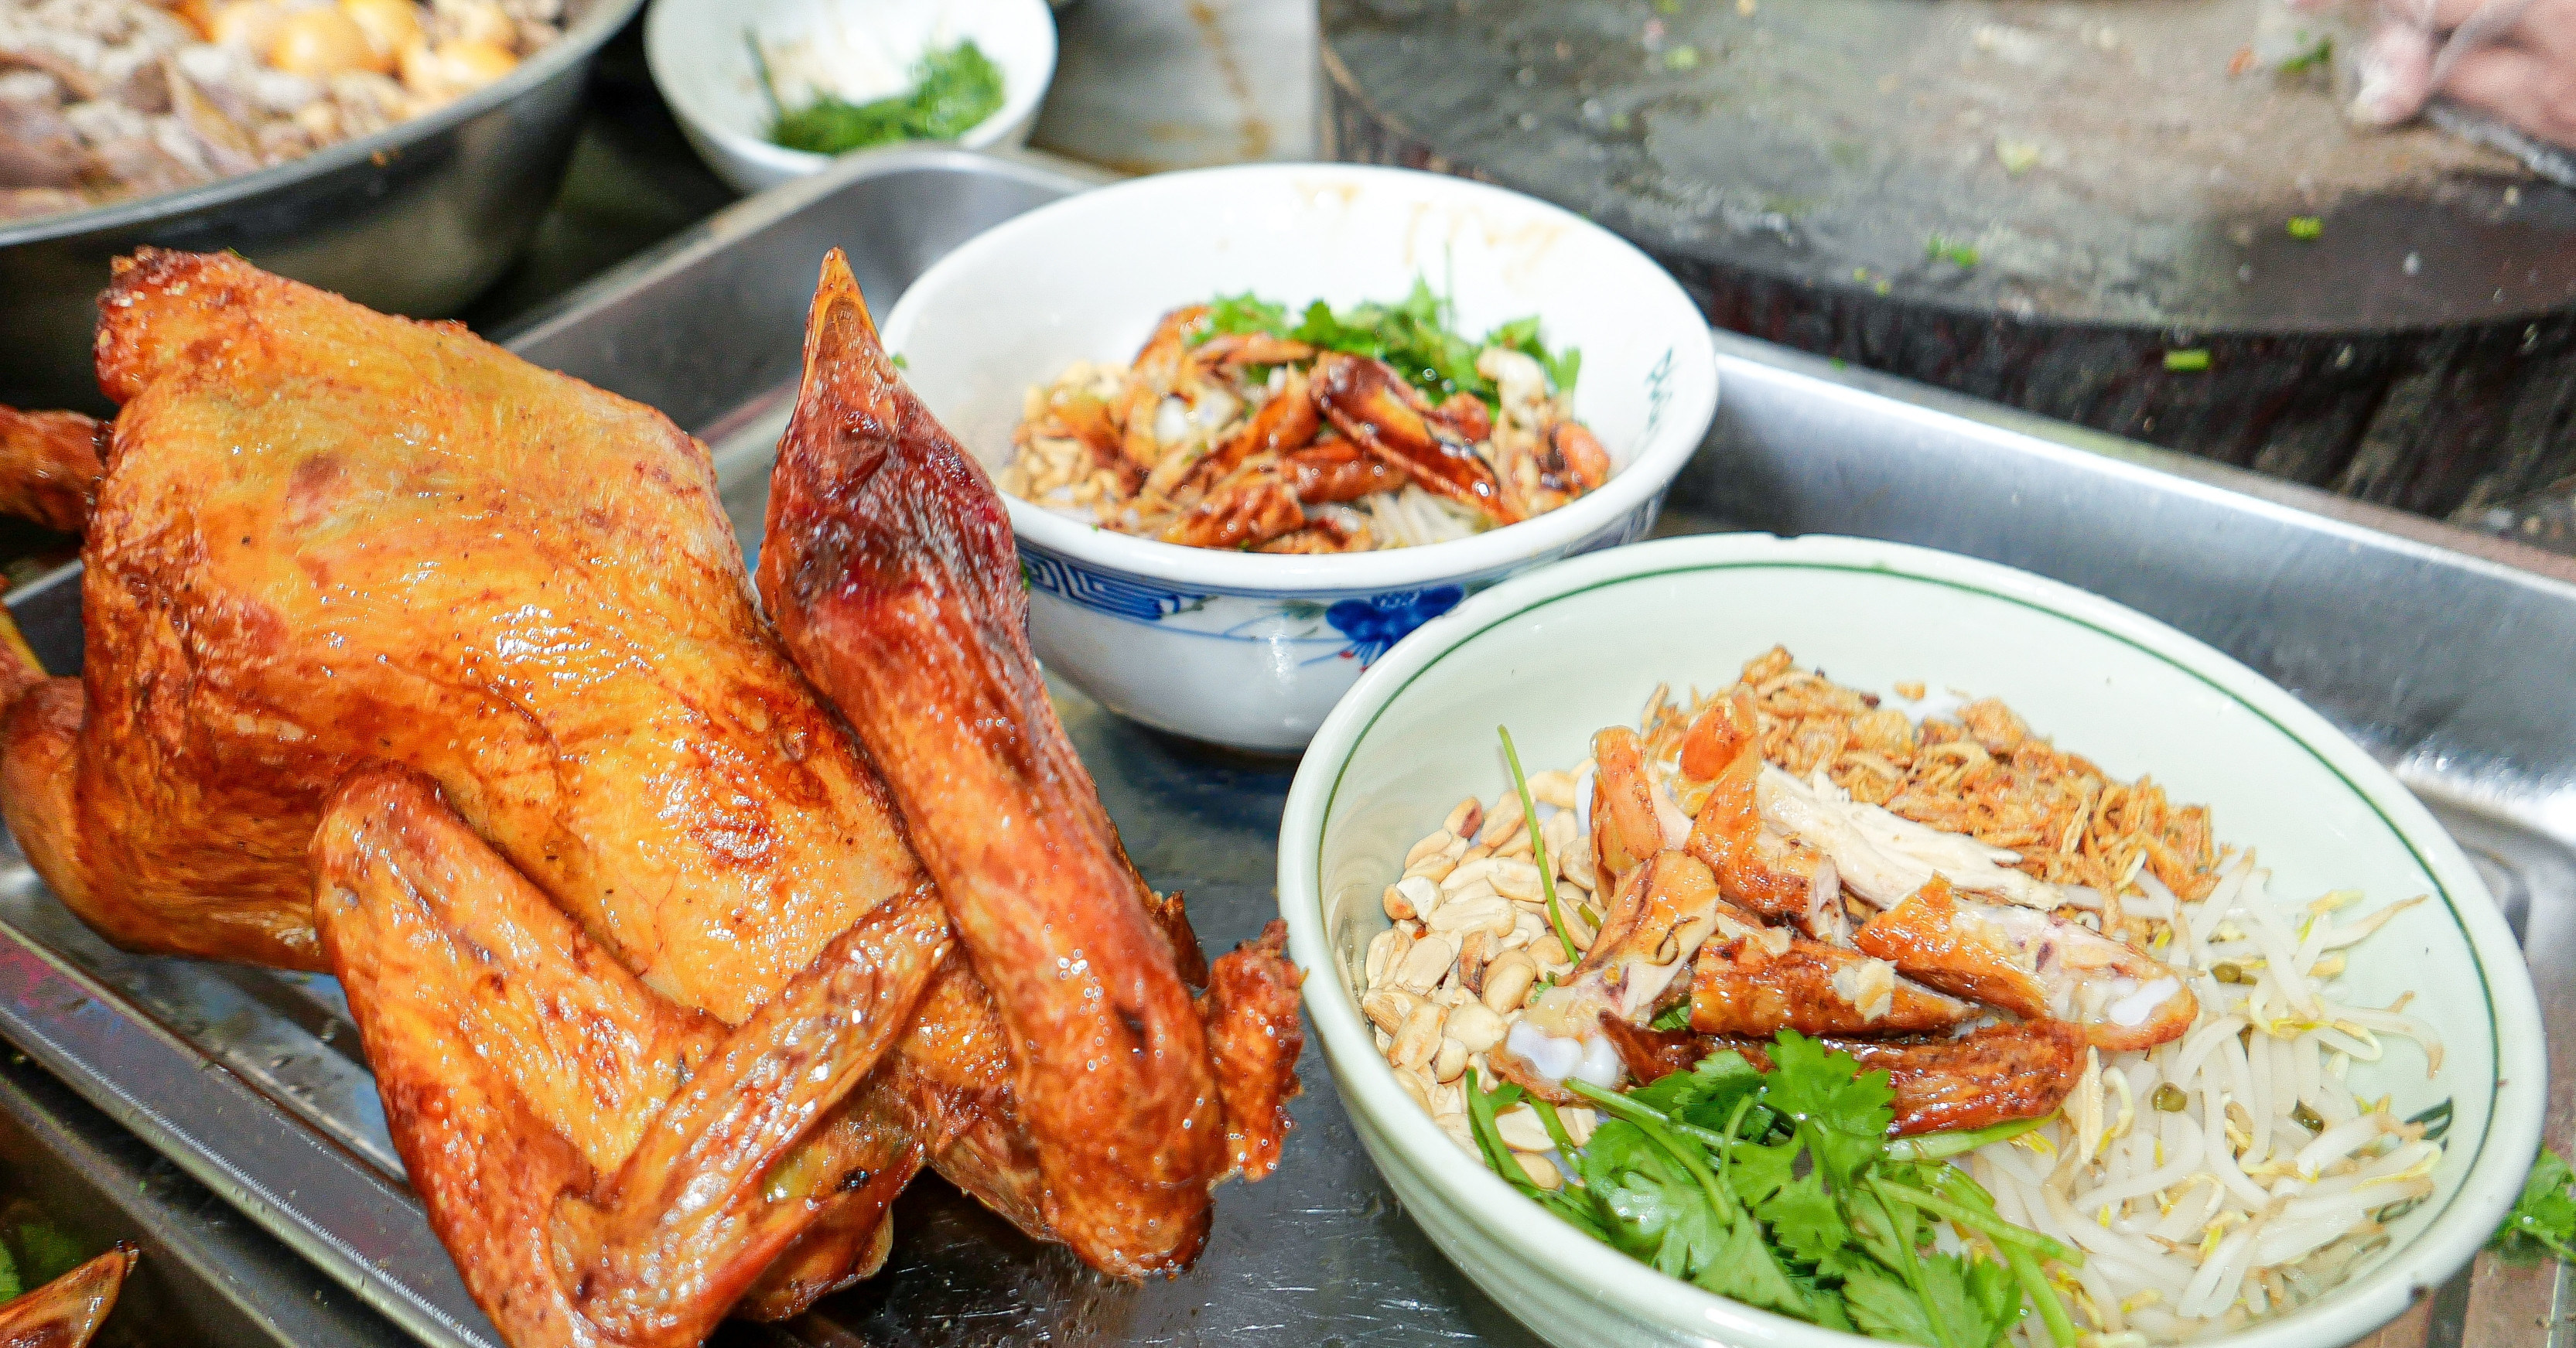 ร้านเฝอไก่ย่าง ขายไก่ 200 ตัวต่อวันในฮานอย ไก่ “อาบ” 3 รอบ หมักเครื่องเทศ 17 ชนิด